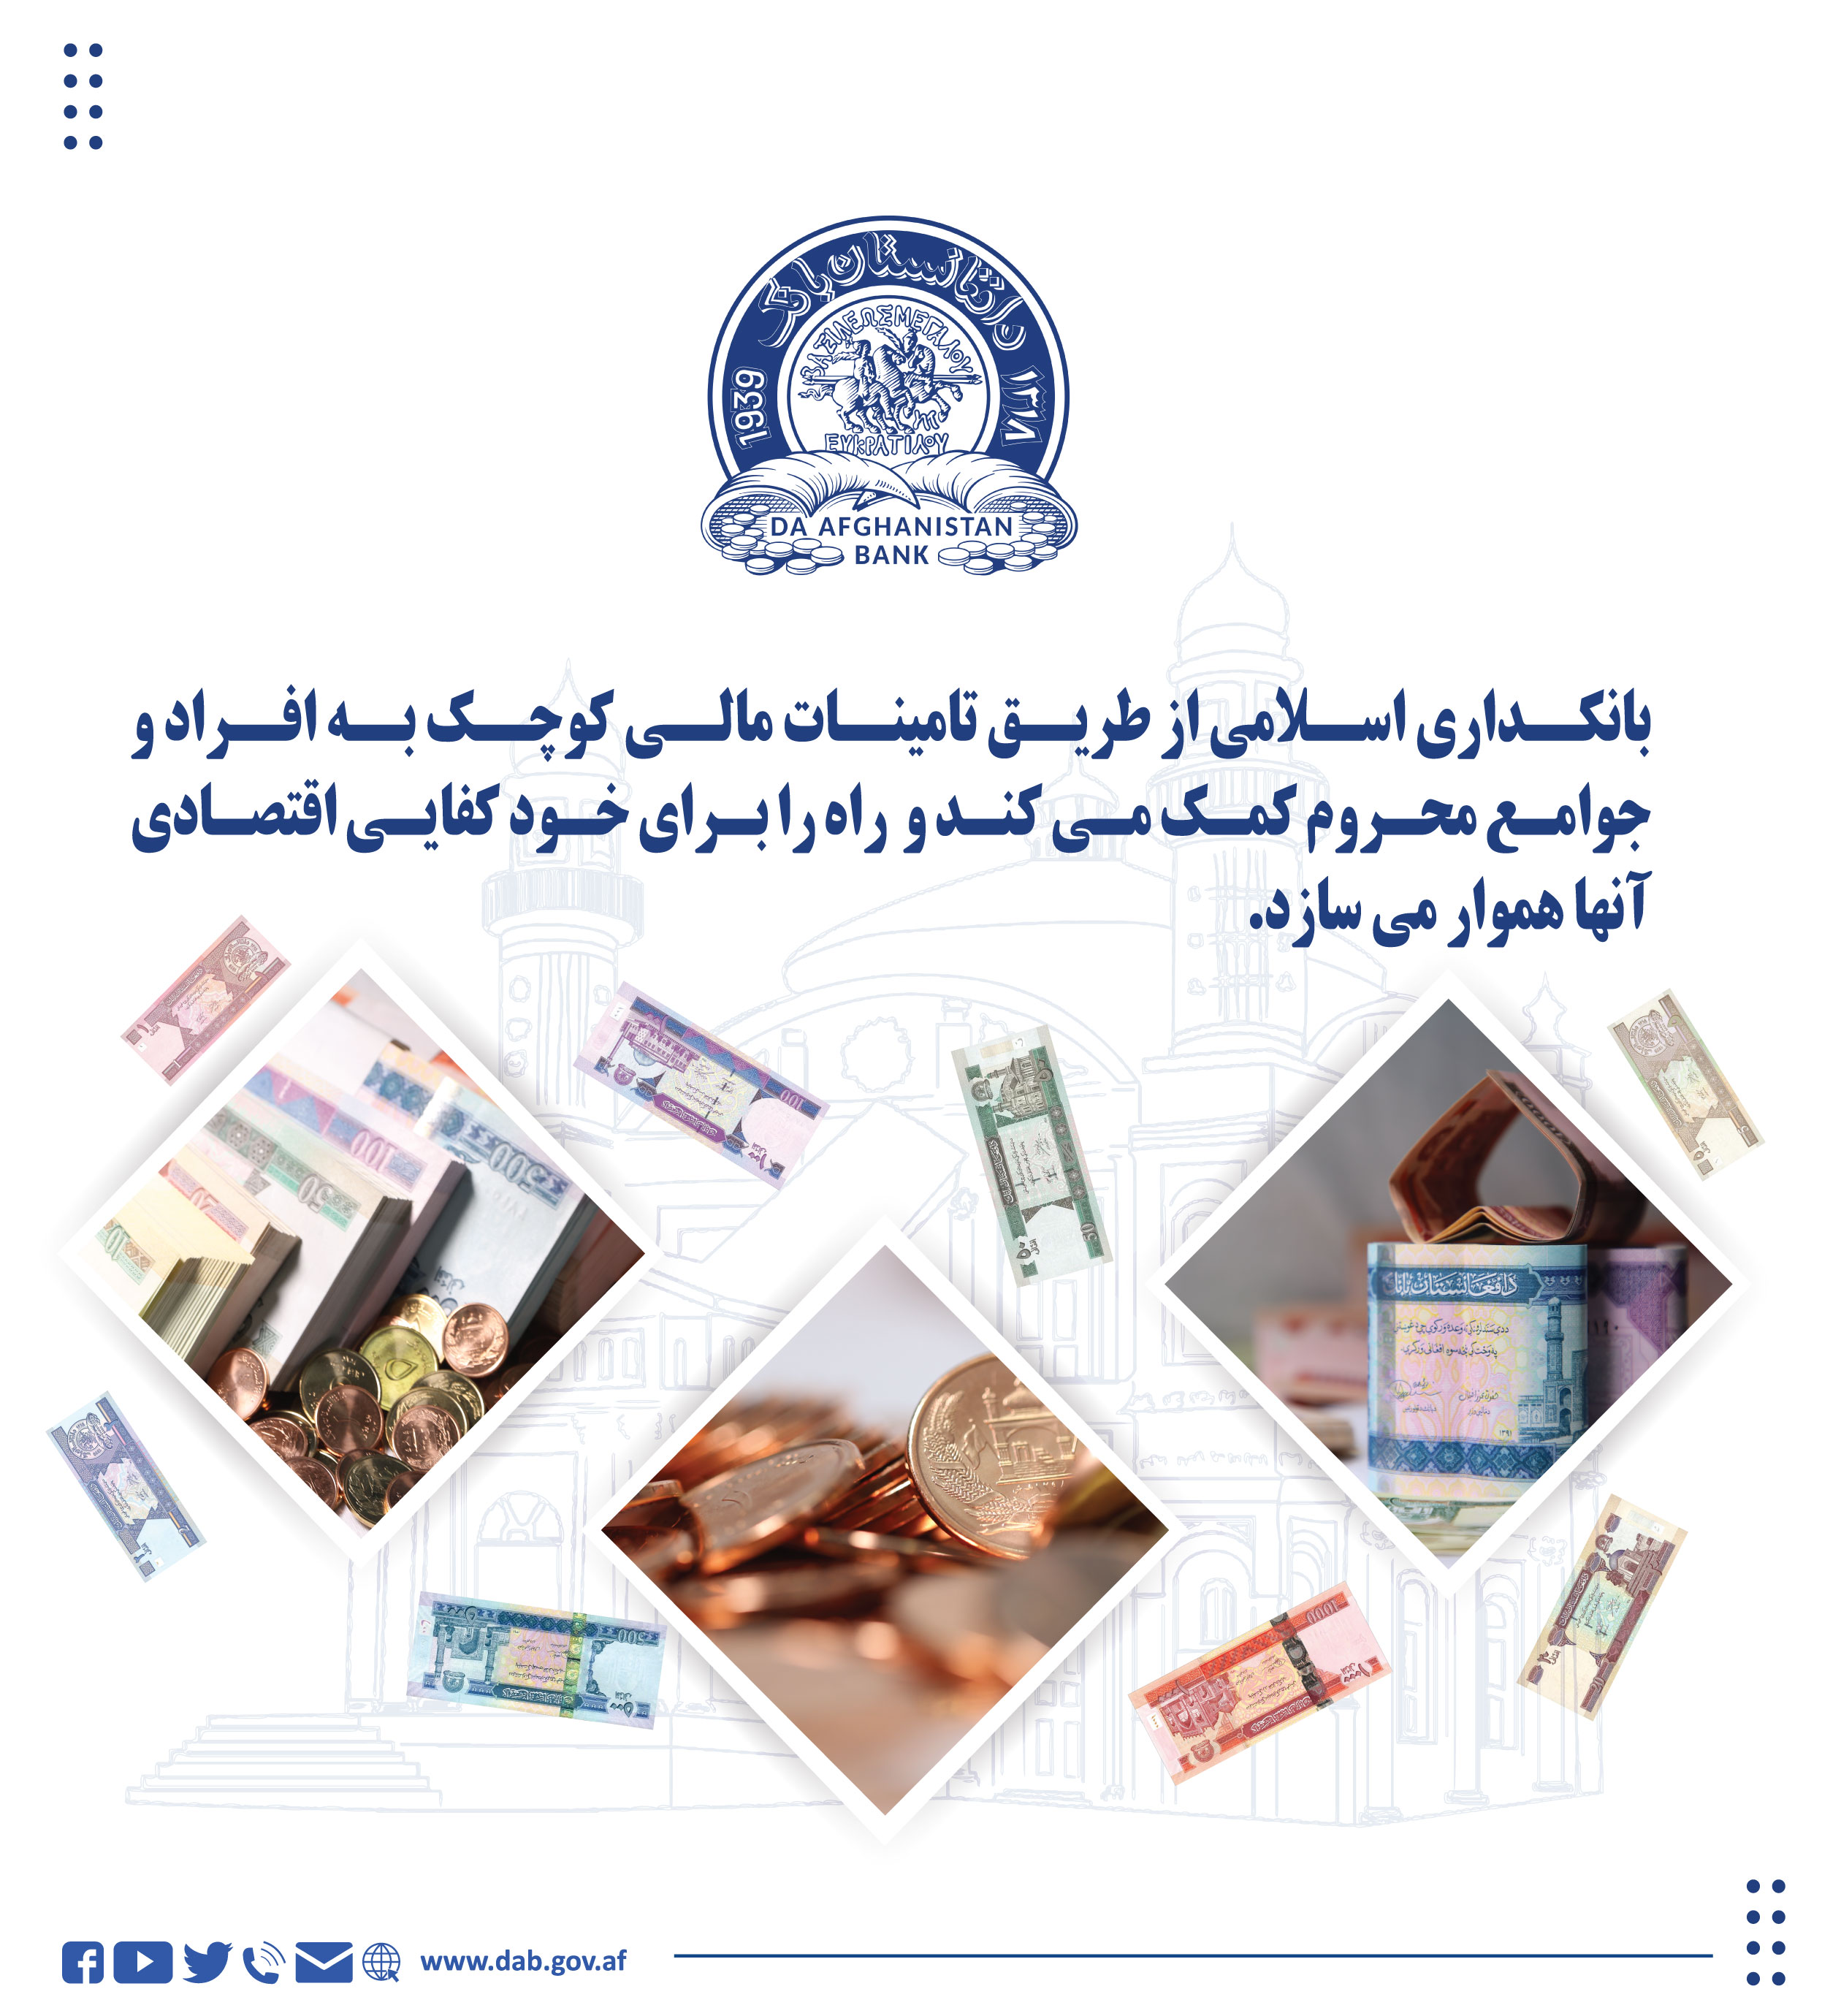 بانکداری اسلامی از طریق تامینات مالی کوچک